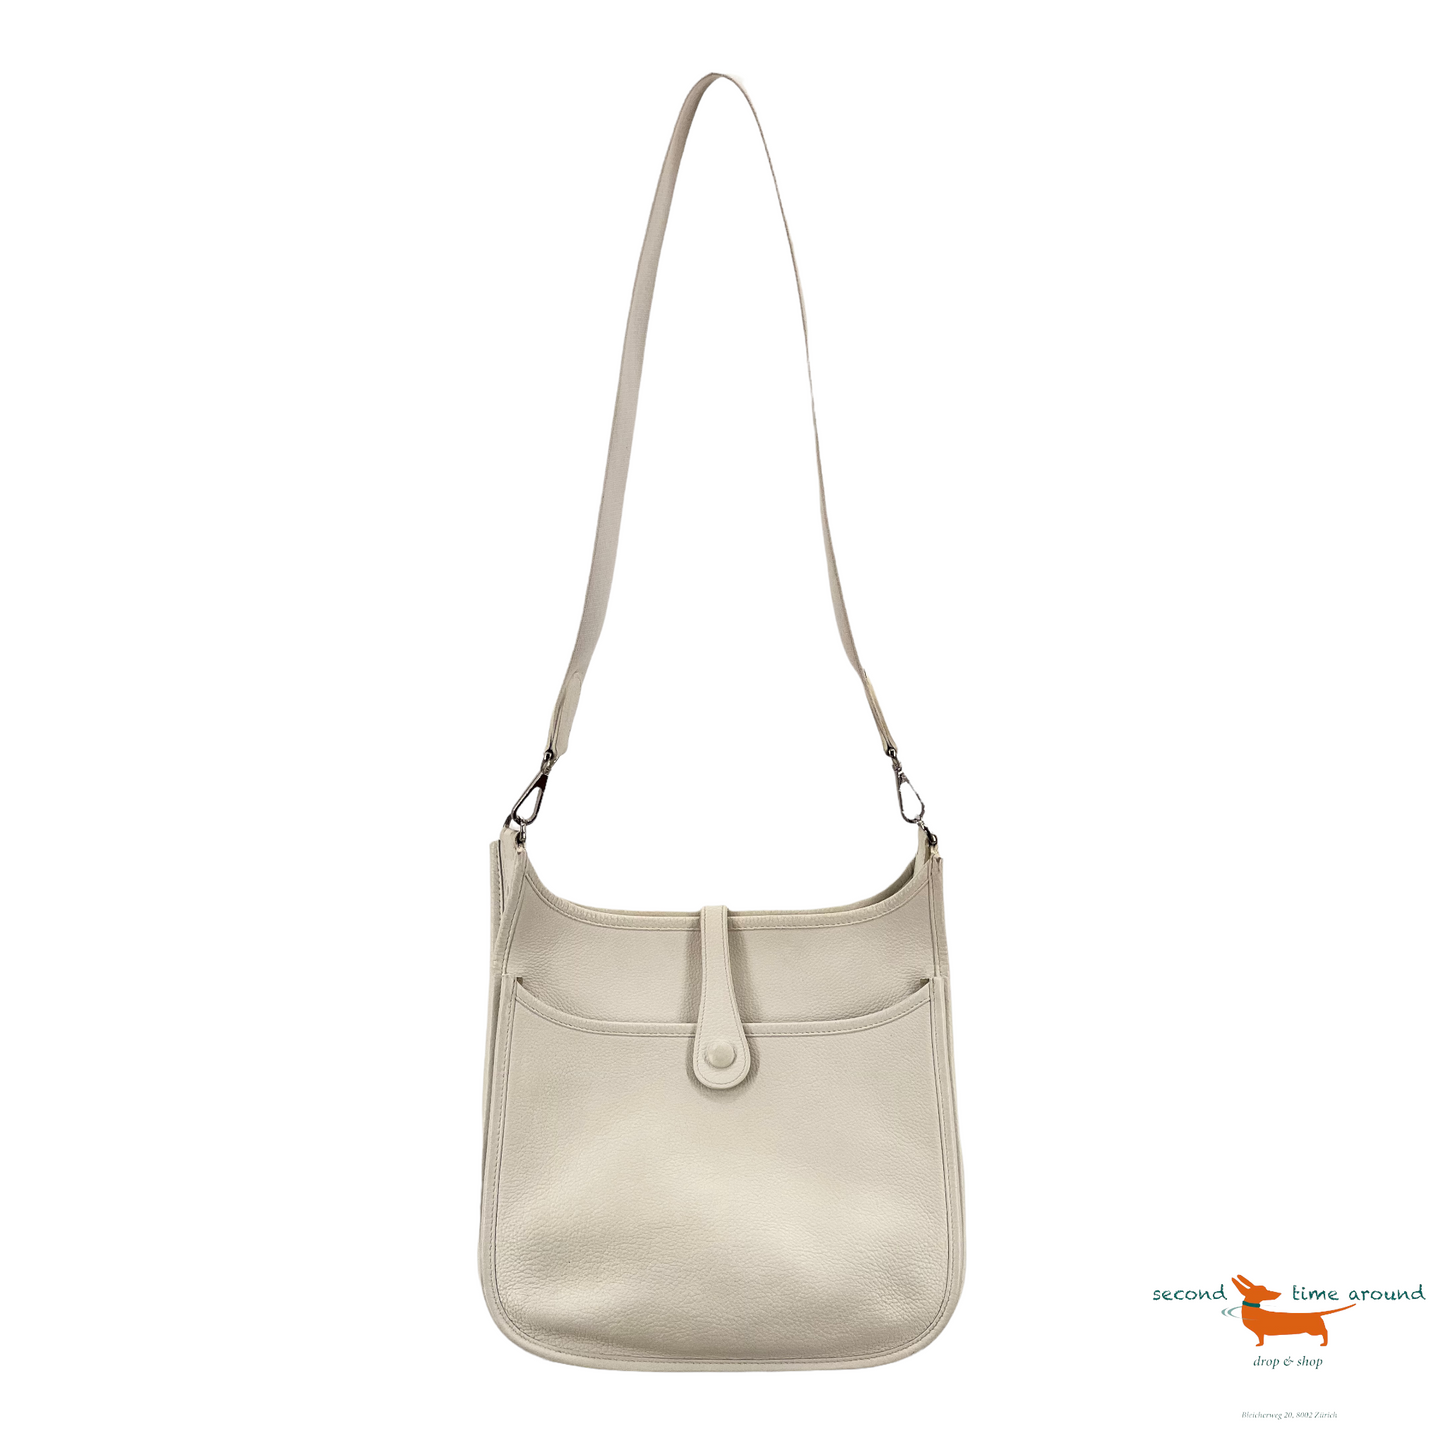 Hermes Evelyne small shoulder bag in white Epsom leather